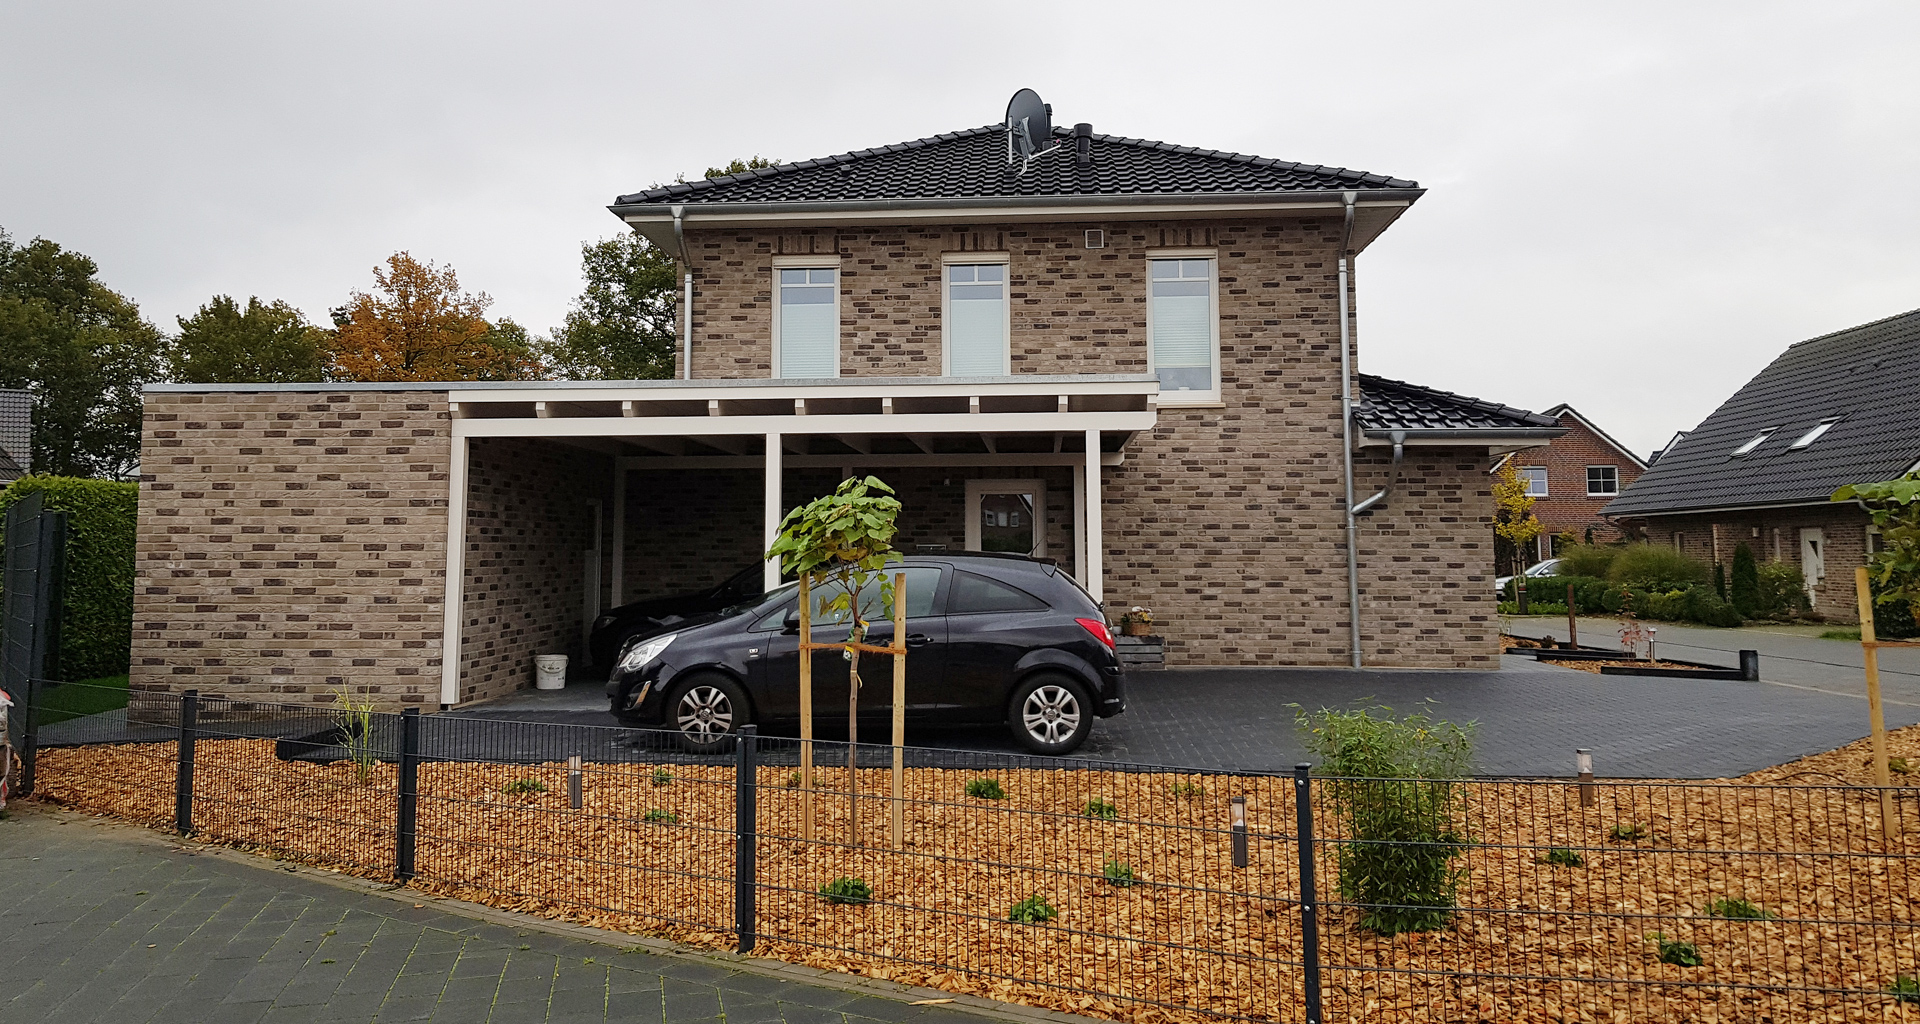 Einfamilienhaus seitlich mit Carport in Grafschaft Bentheim Osterwald 2019